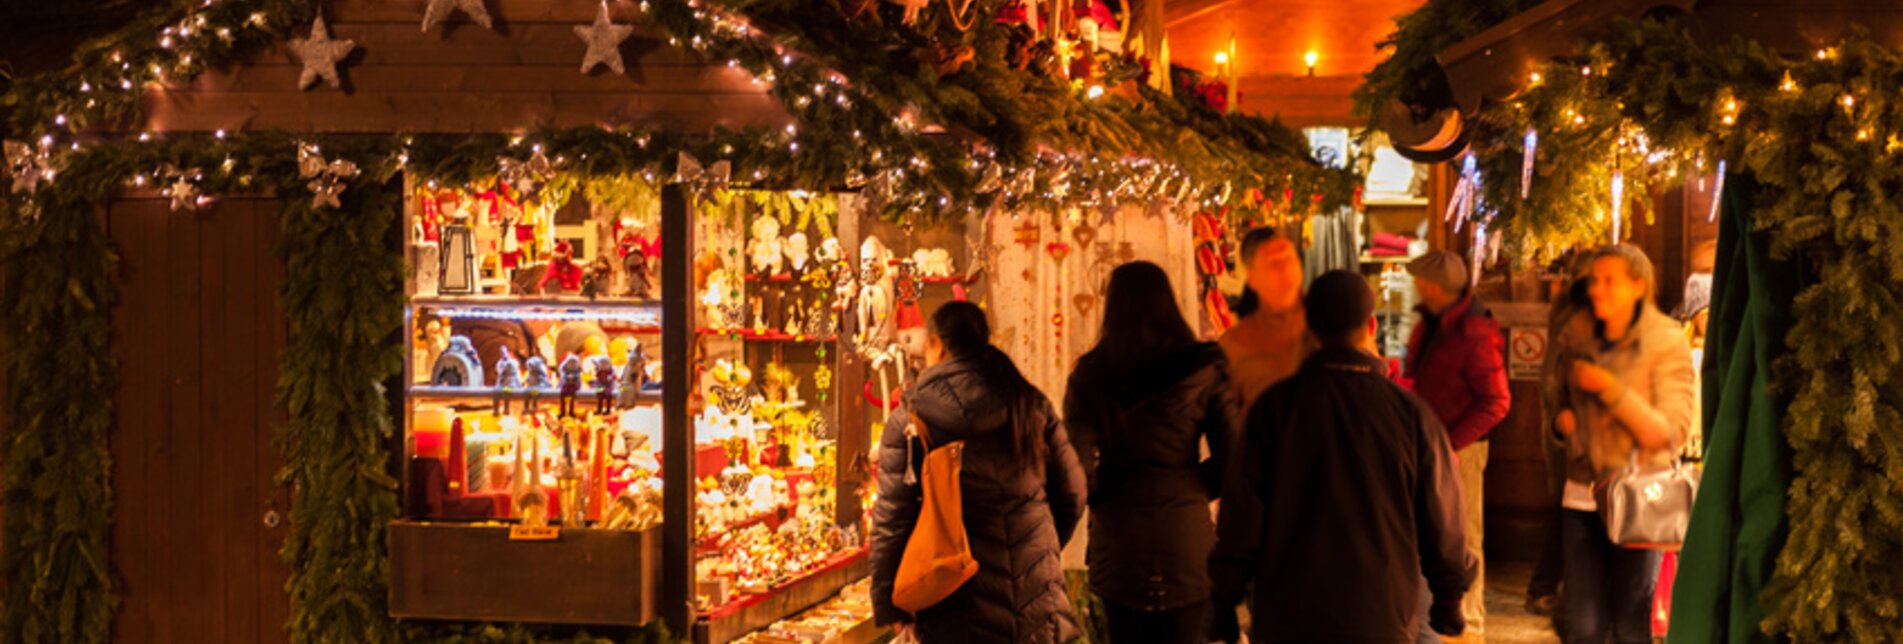 Weihnachtsmarkt in der Oststeiermark | © Fotolia